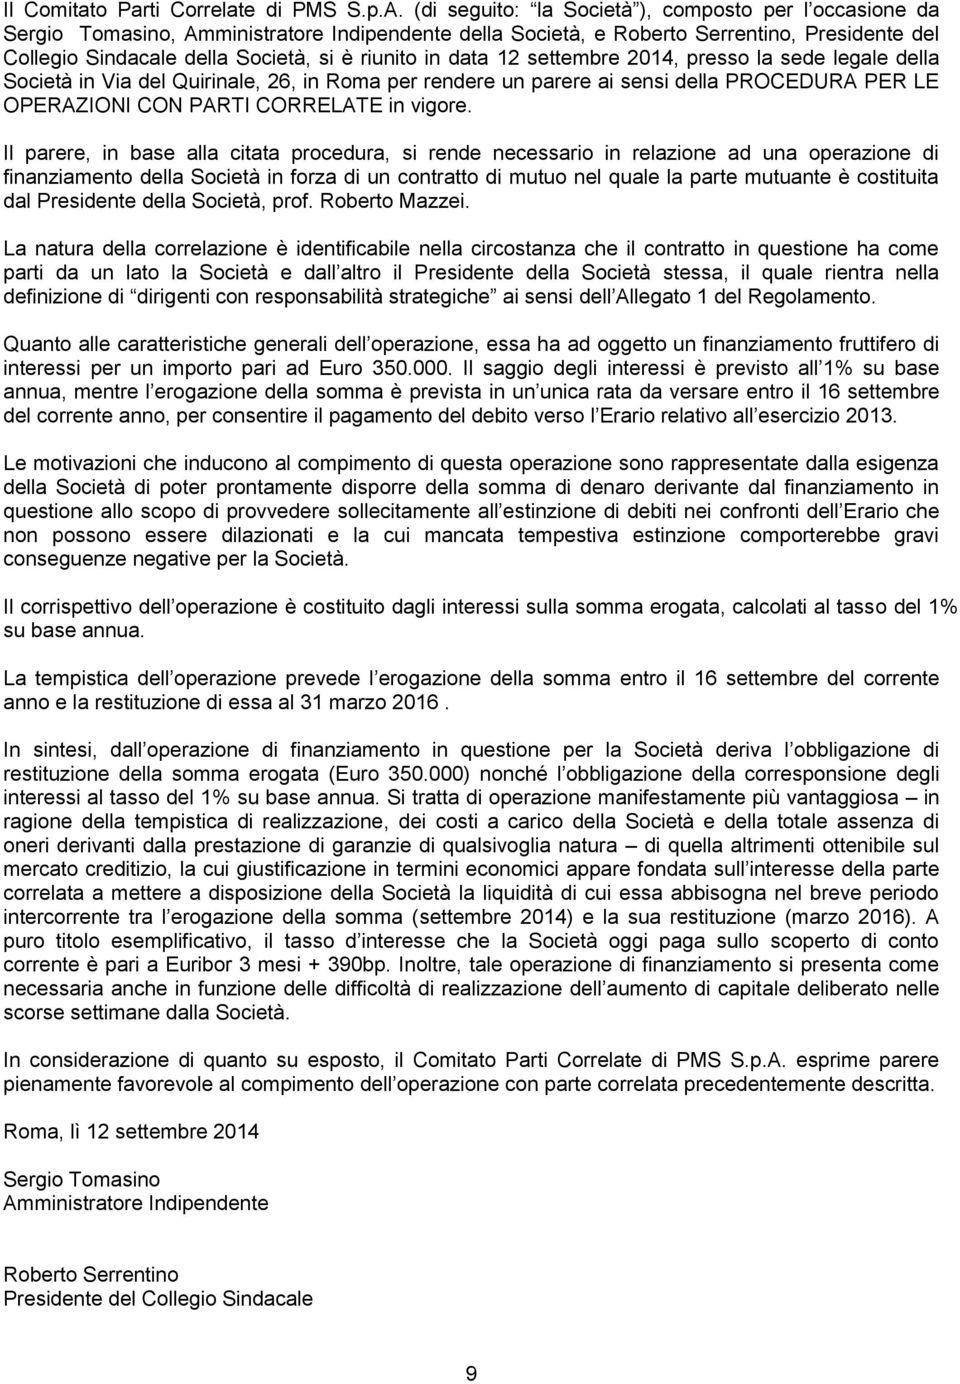 in data 12 settembre 2014, presso la sede legale della Società in Via del Quirinale, 26, in Roma per rendere un parere ai sensi della PROCEDURA PER LE OPERAZIONI CON PARTI CORRELATE in vigore.